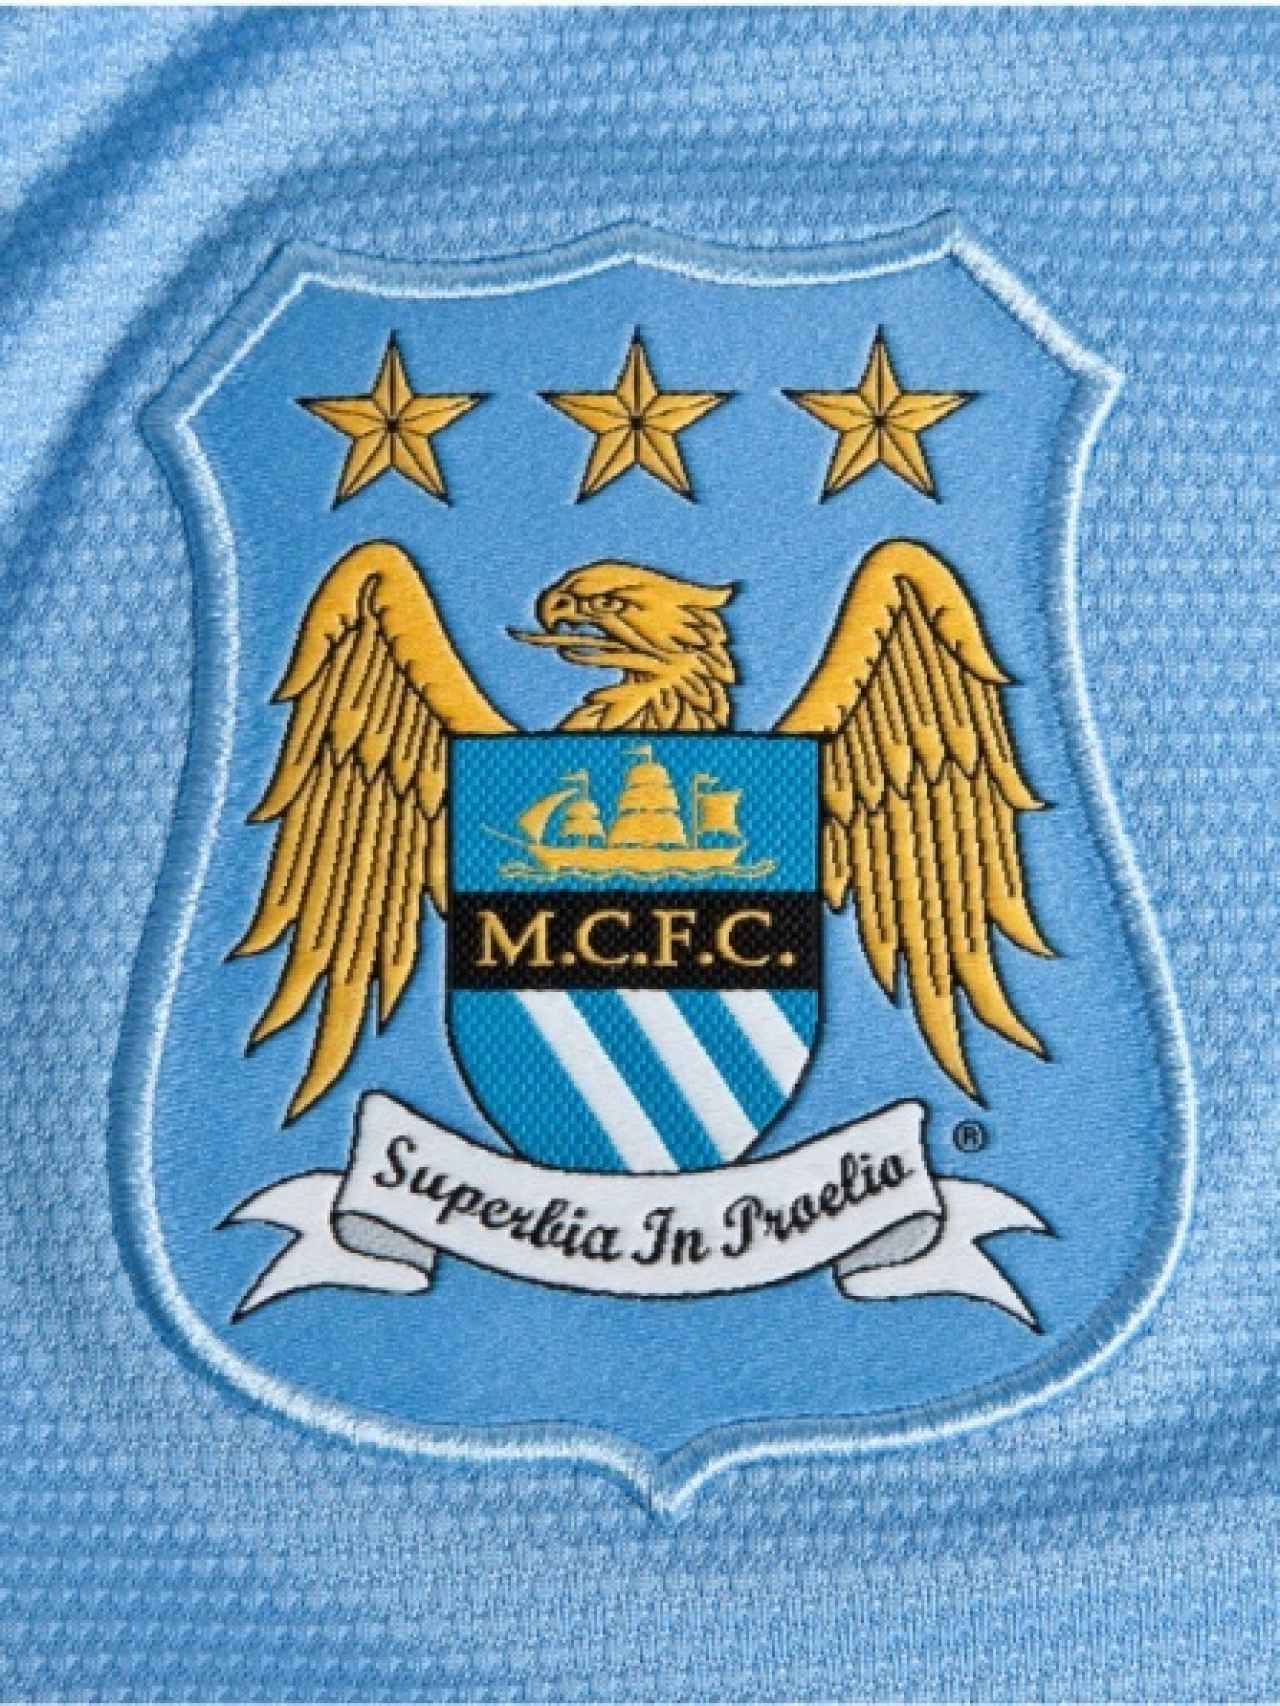 Escudo del Manchester City (1997 - 2015)